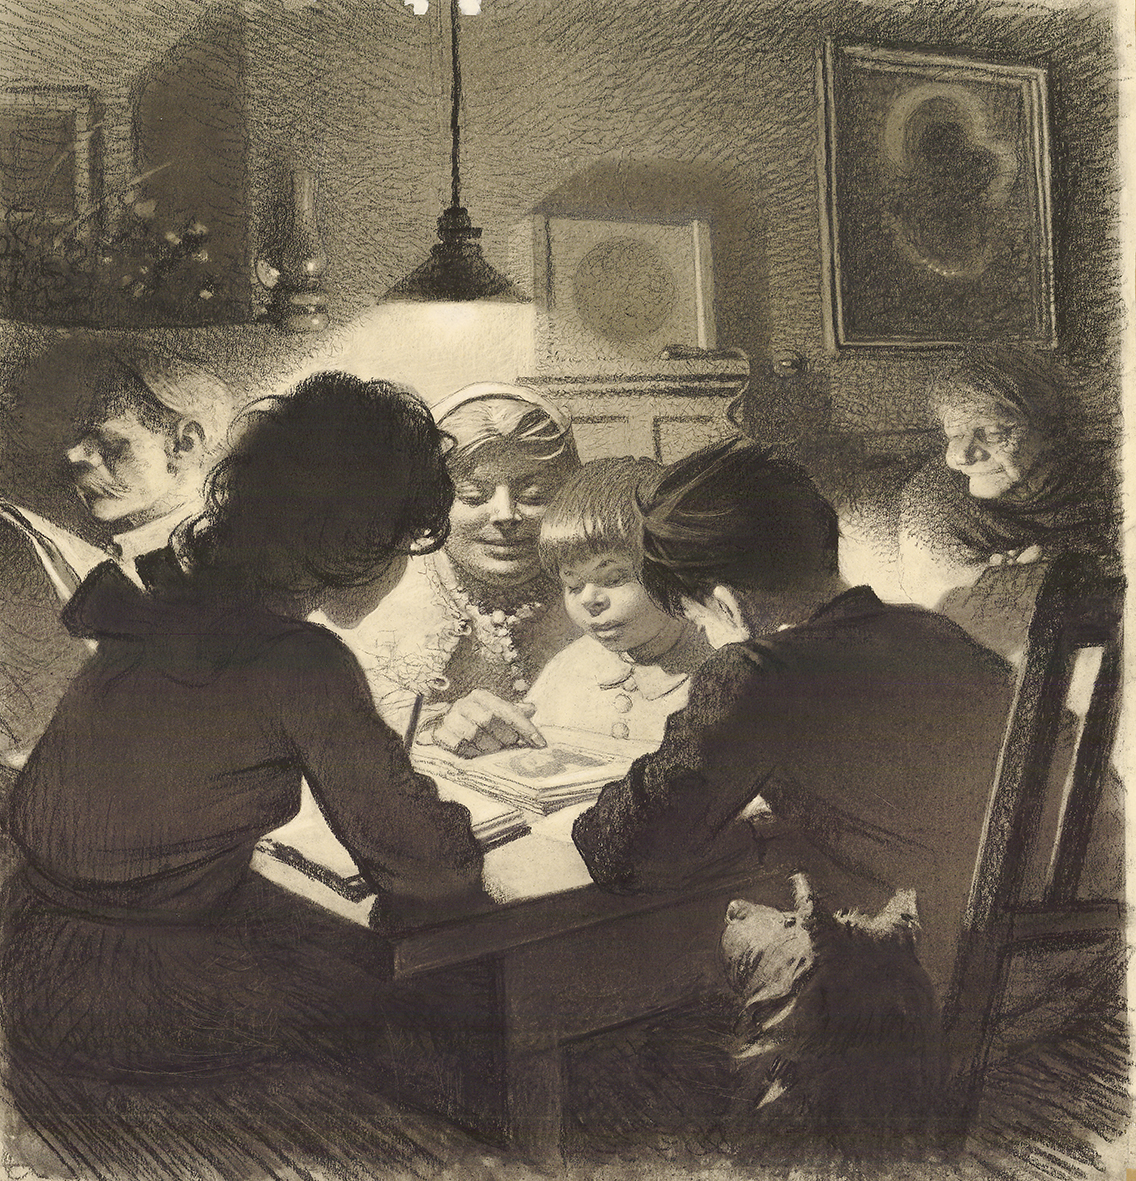 Rysunek ołówkiem i węglem autorstwa Stefana Żechowskiego z 1953 roku pod tytułem „Trzy pokolenia”. Przedstawia scenę w wiejskiej izbie: przy stole oświetlonym elektryczną lampą, ujęci en trois quarts od tyłu, kilkunastoletnia dziewczynka i trochę młodszy chłopiec odrabiają lekcje. Między nimi, po drugiej stronie stołu, ukazana na wprost kobieta pokazuje siedzącemu obok dziecku podobiznę Mickiewicza w otwartej książce. W głębi na lewo od tej grupy wąsaty mężczyzna czytający gazetę, na prawo półsiedząca na łóżku staruszka. Pośrodku na szafie głośnik radiowy, na ścianie po lewej lampa naftowa, po prawej nad łóżkiem obraz z Matką Boską Częstochowską.